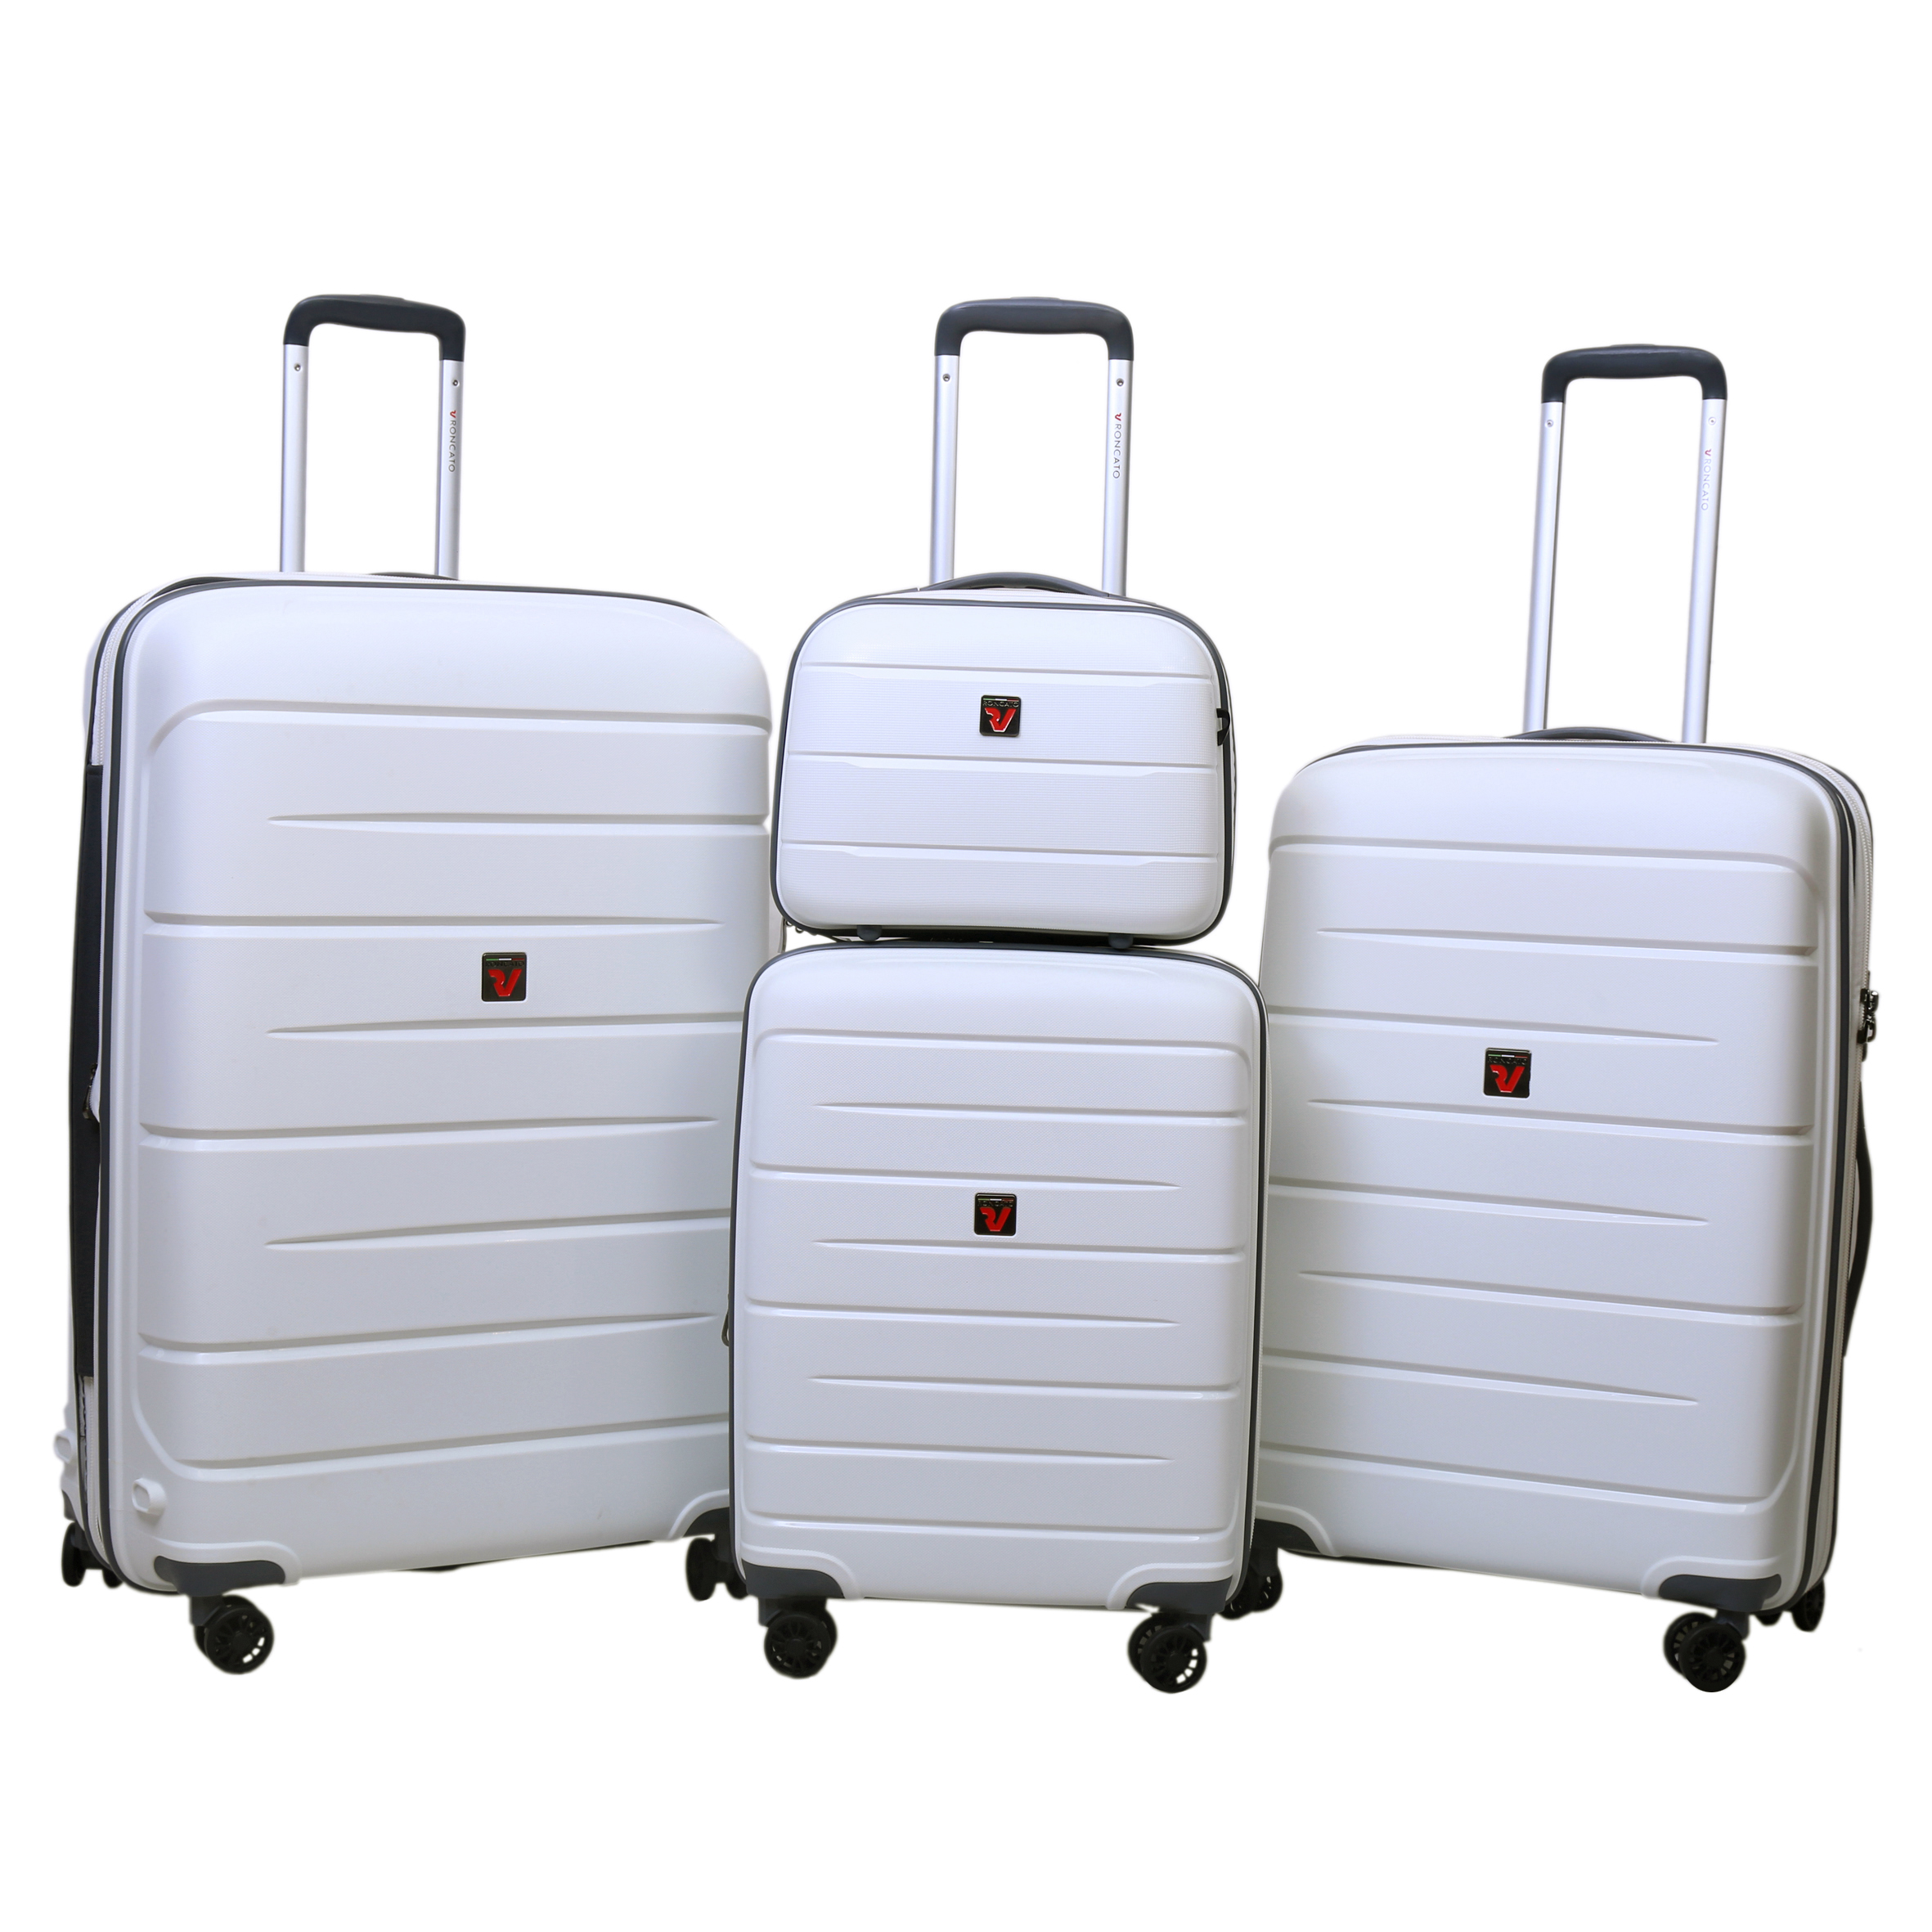 نکته خرید - قیمت روز چمدان رونکاتو مدل 413470 مجموعه چهار عددی خرید